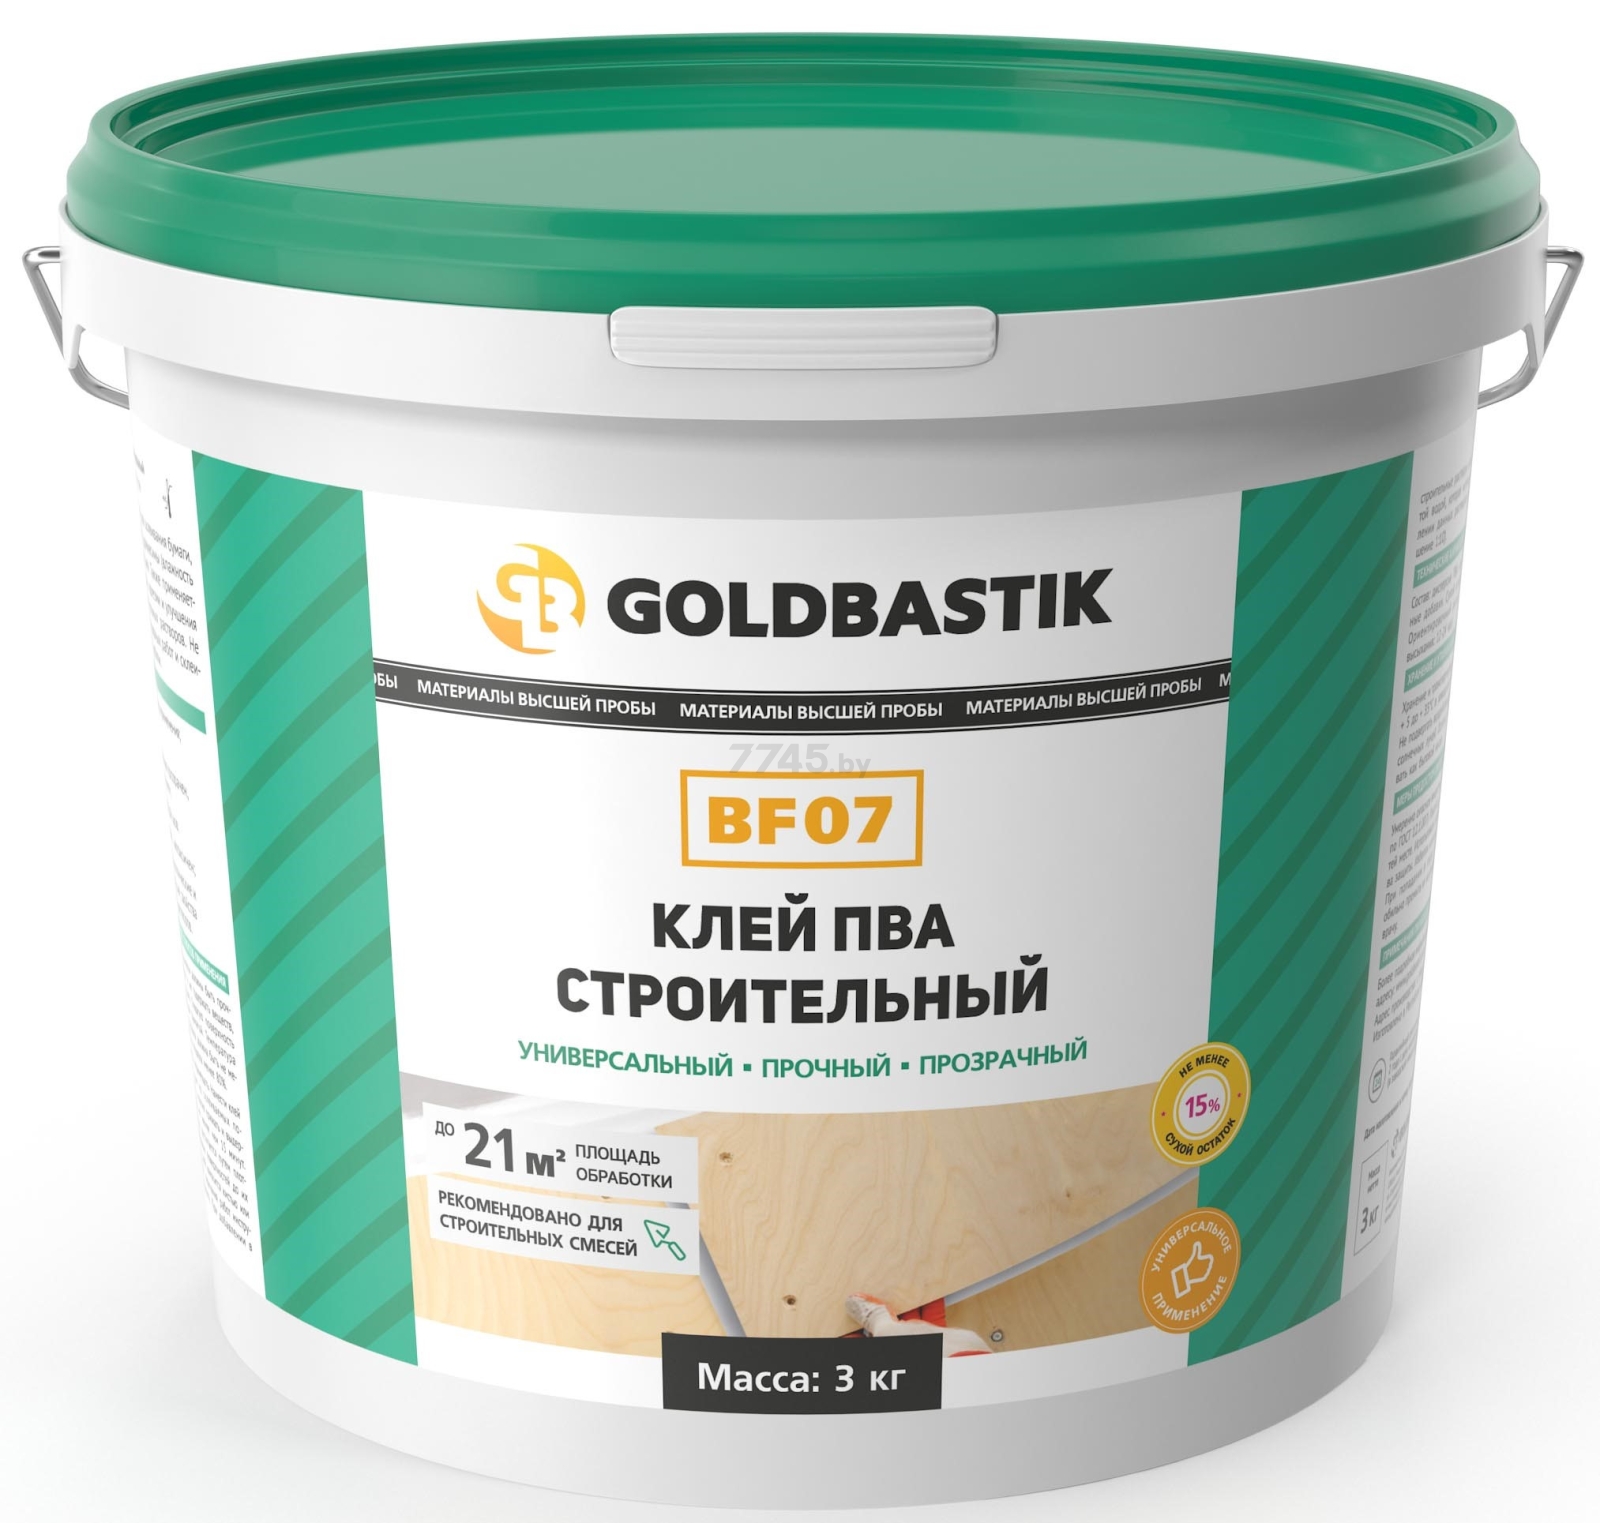 Клей строительный GOLDBASTIK 3 кг (BF 07)